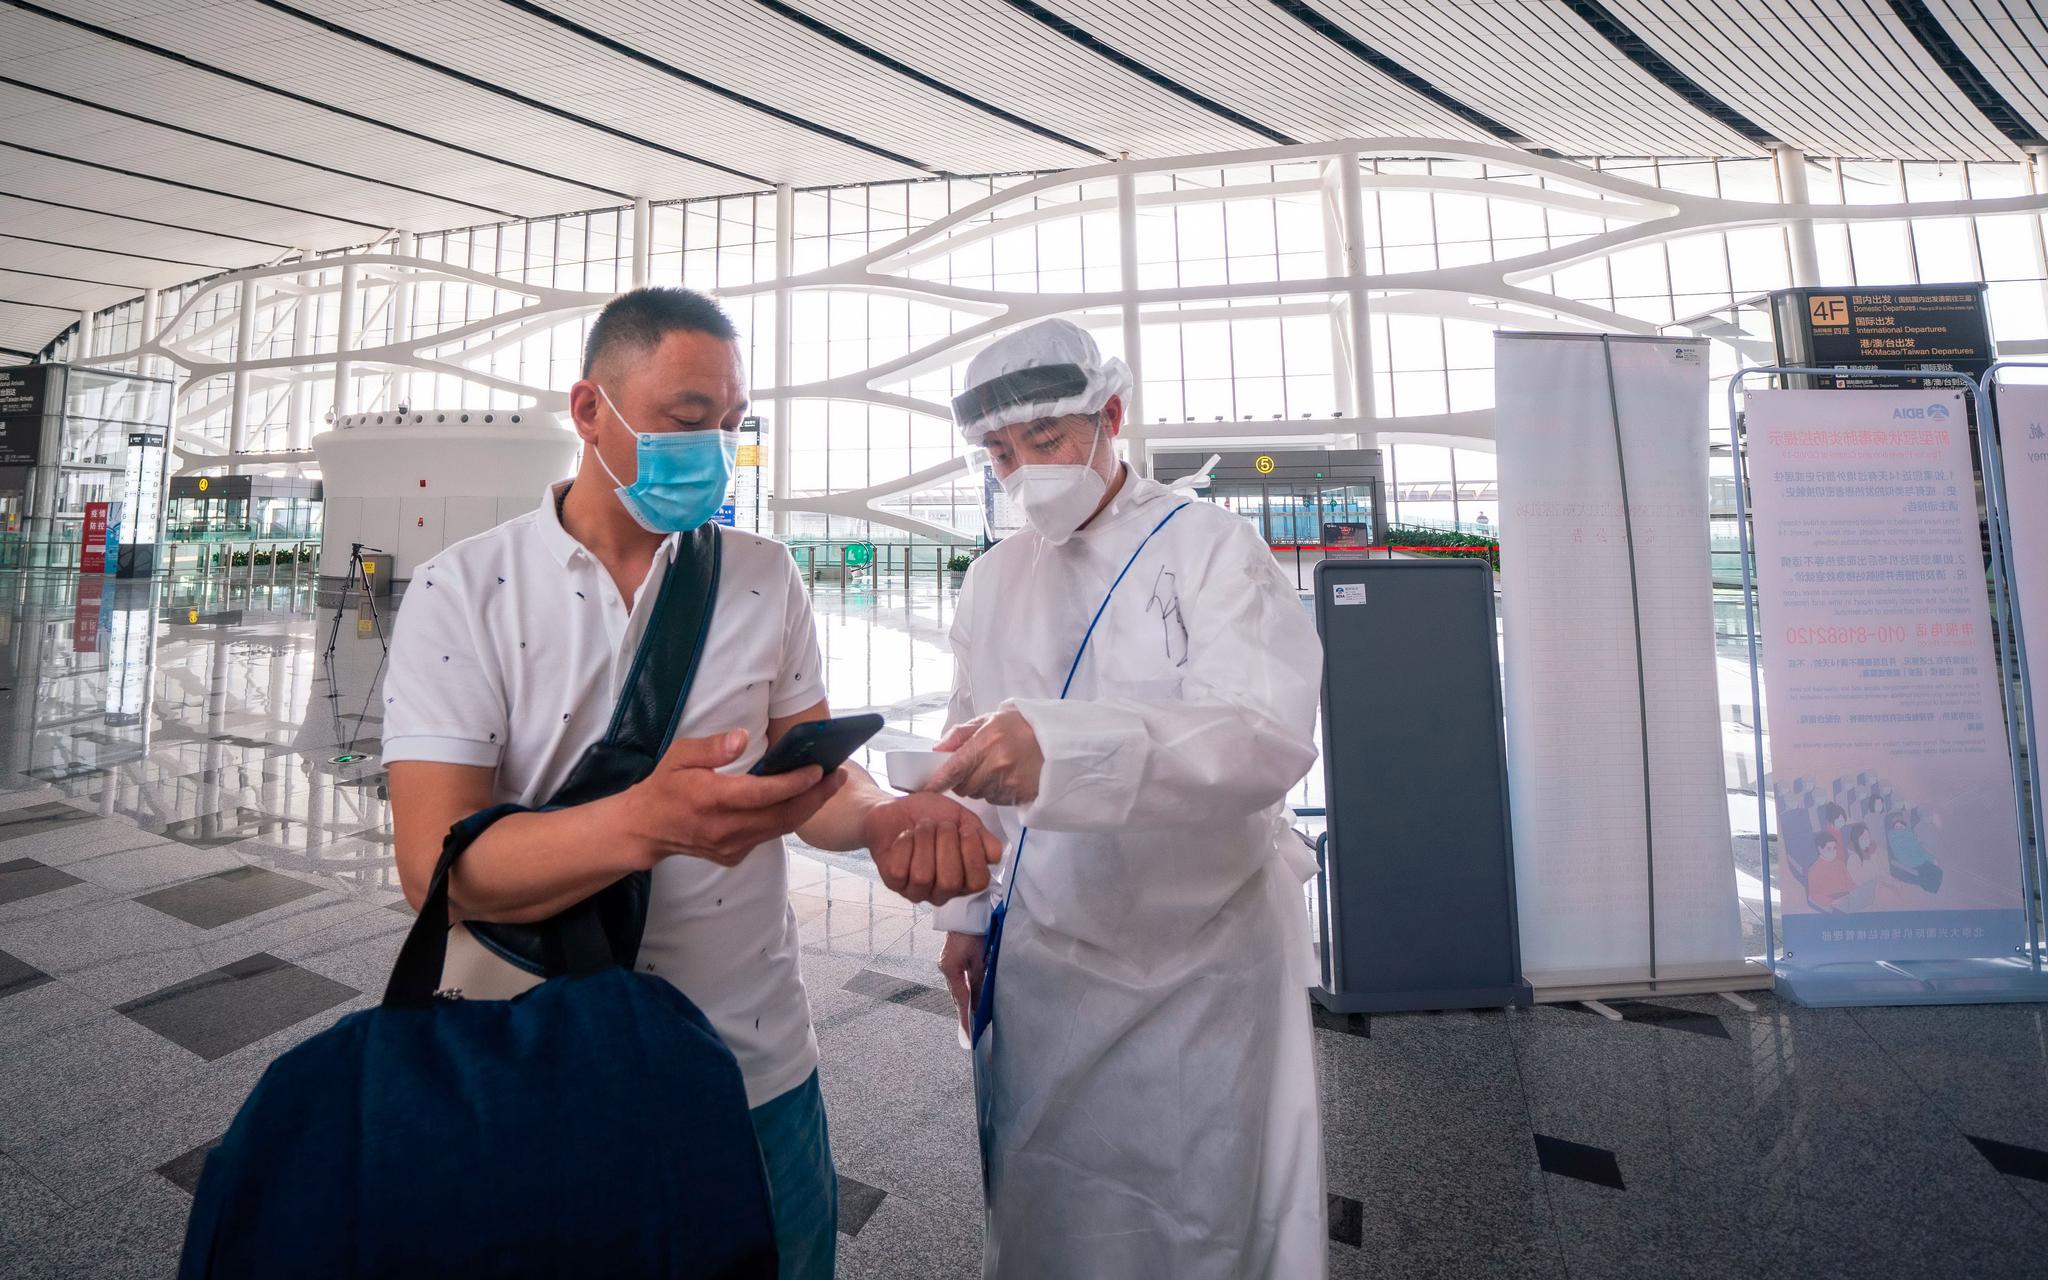 假期出行，疫情防控依然非常重要，航空公司地面服务人员将对旅客进行测温。东航供图